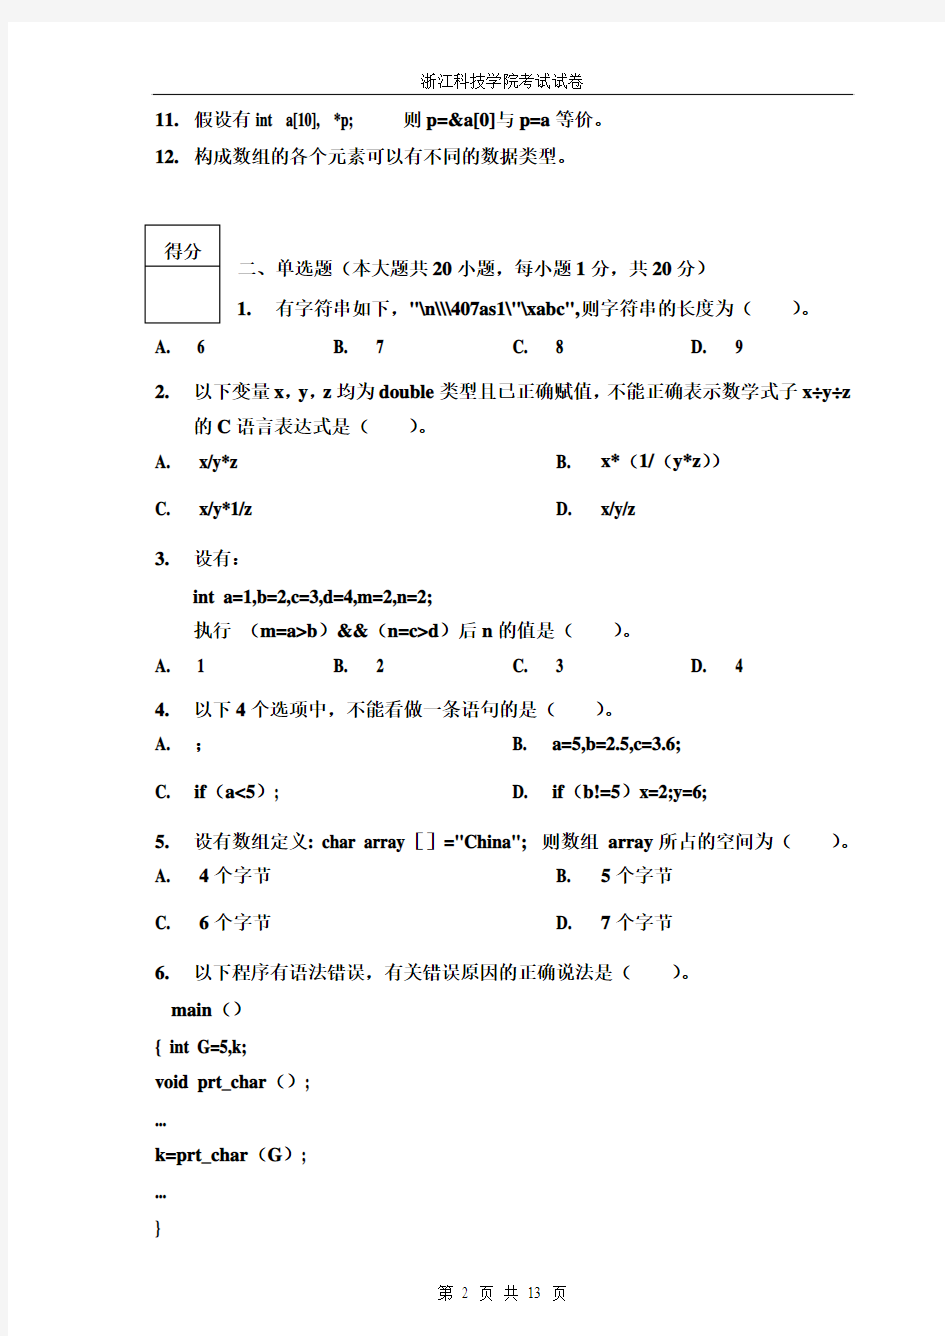 浙江科技学院 C语言(2010-2011-1)试卷-2